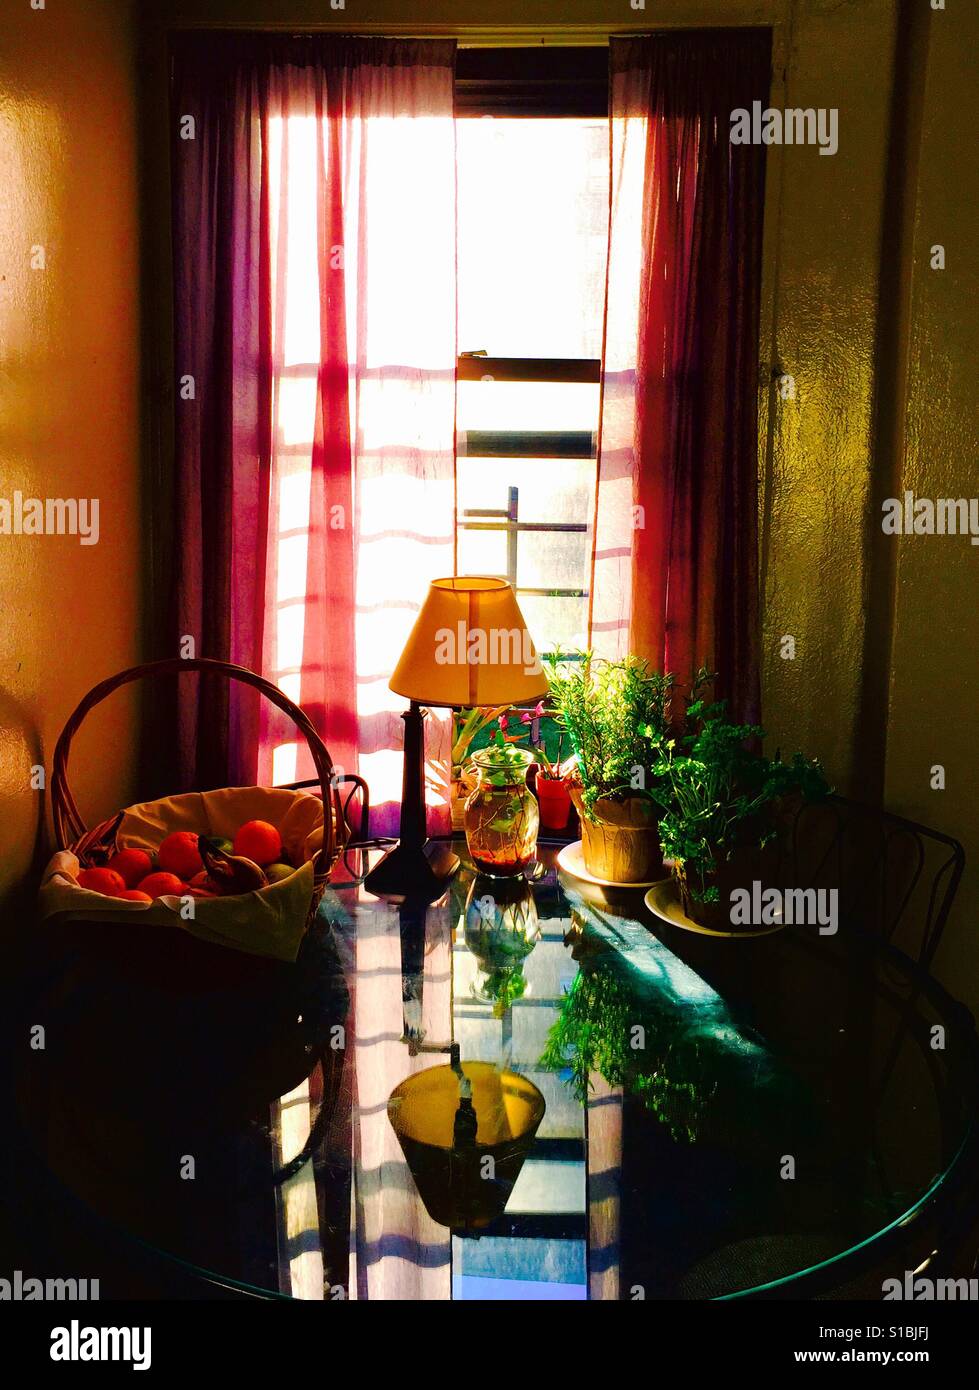 Ambiente caldo , pieni di sole cucina finestra con vetro riflettente tabella Foto Stock